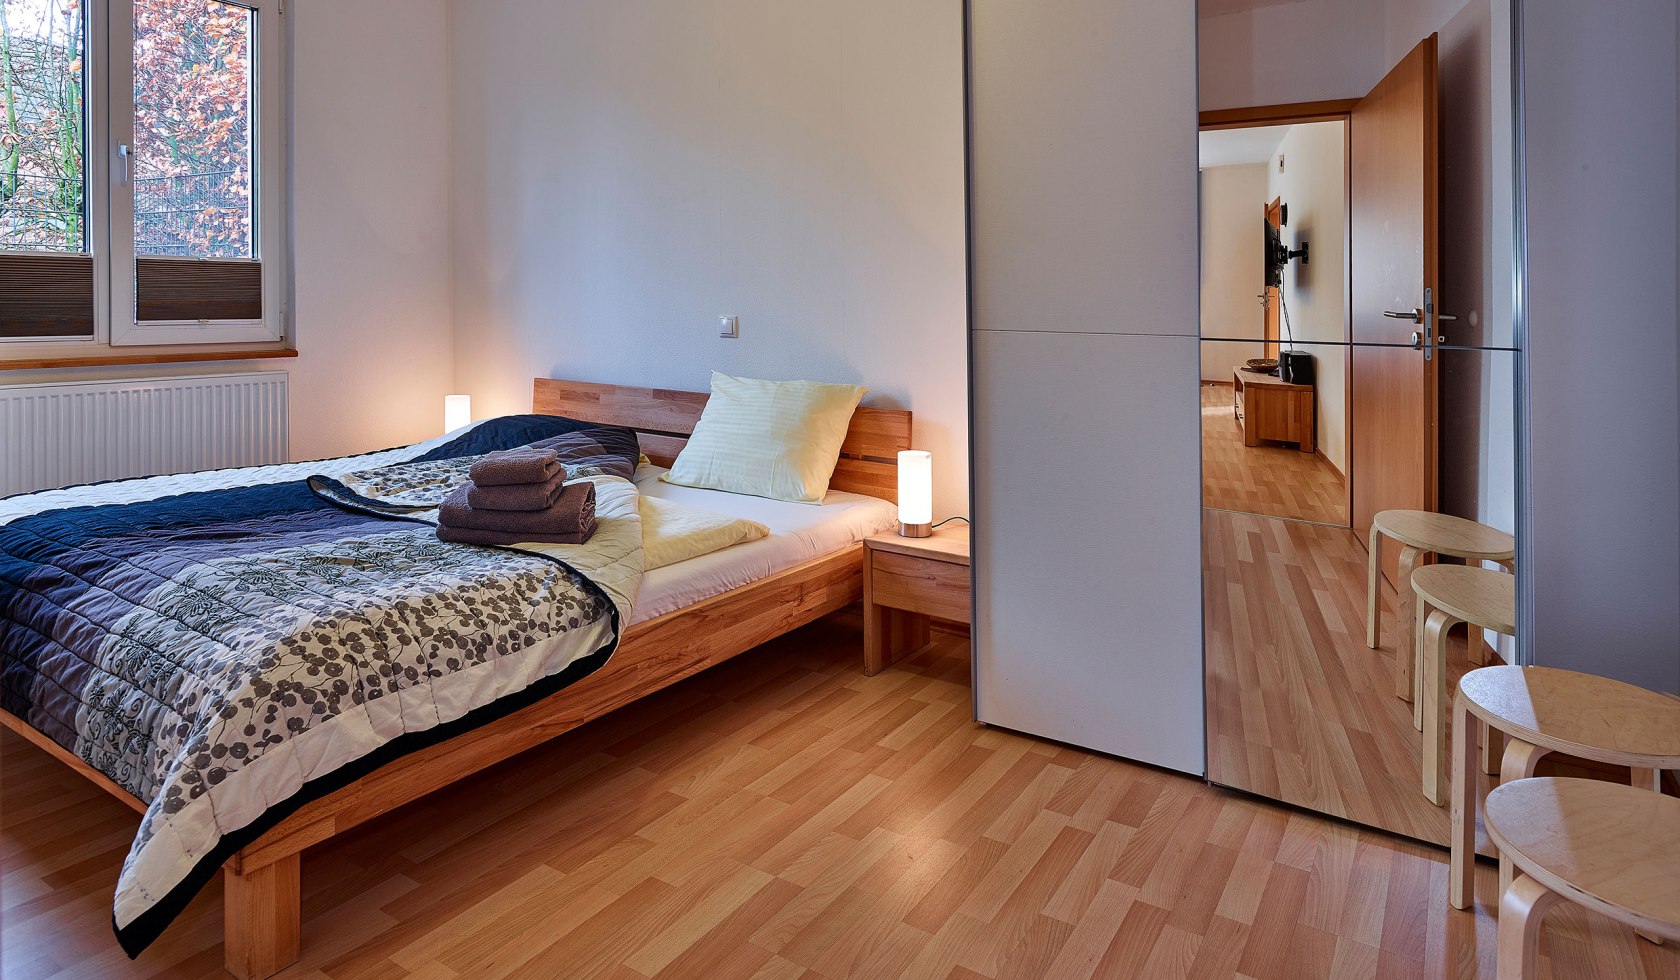 Einblick in das Schlafzimmer mit Doppelbett, Schrank und Holzfußboden, © Tierpark Nordhorn gGmbH / Franz Frieling